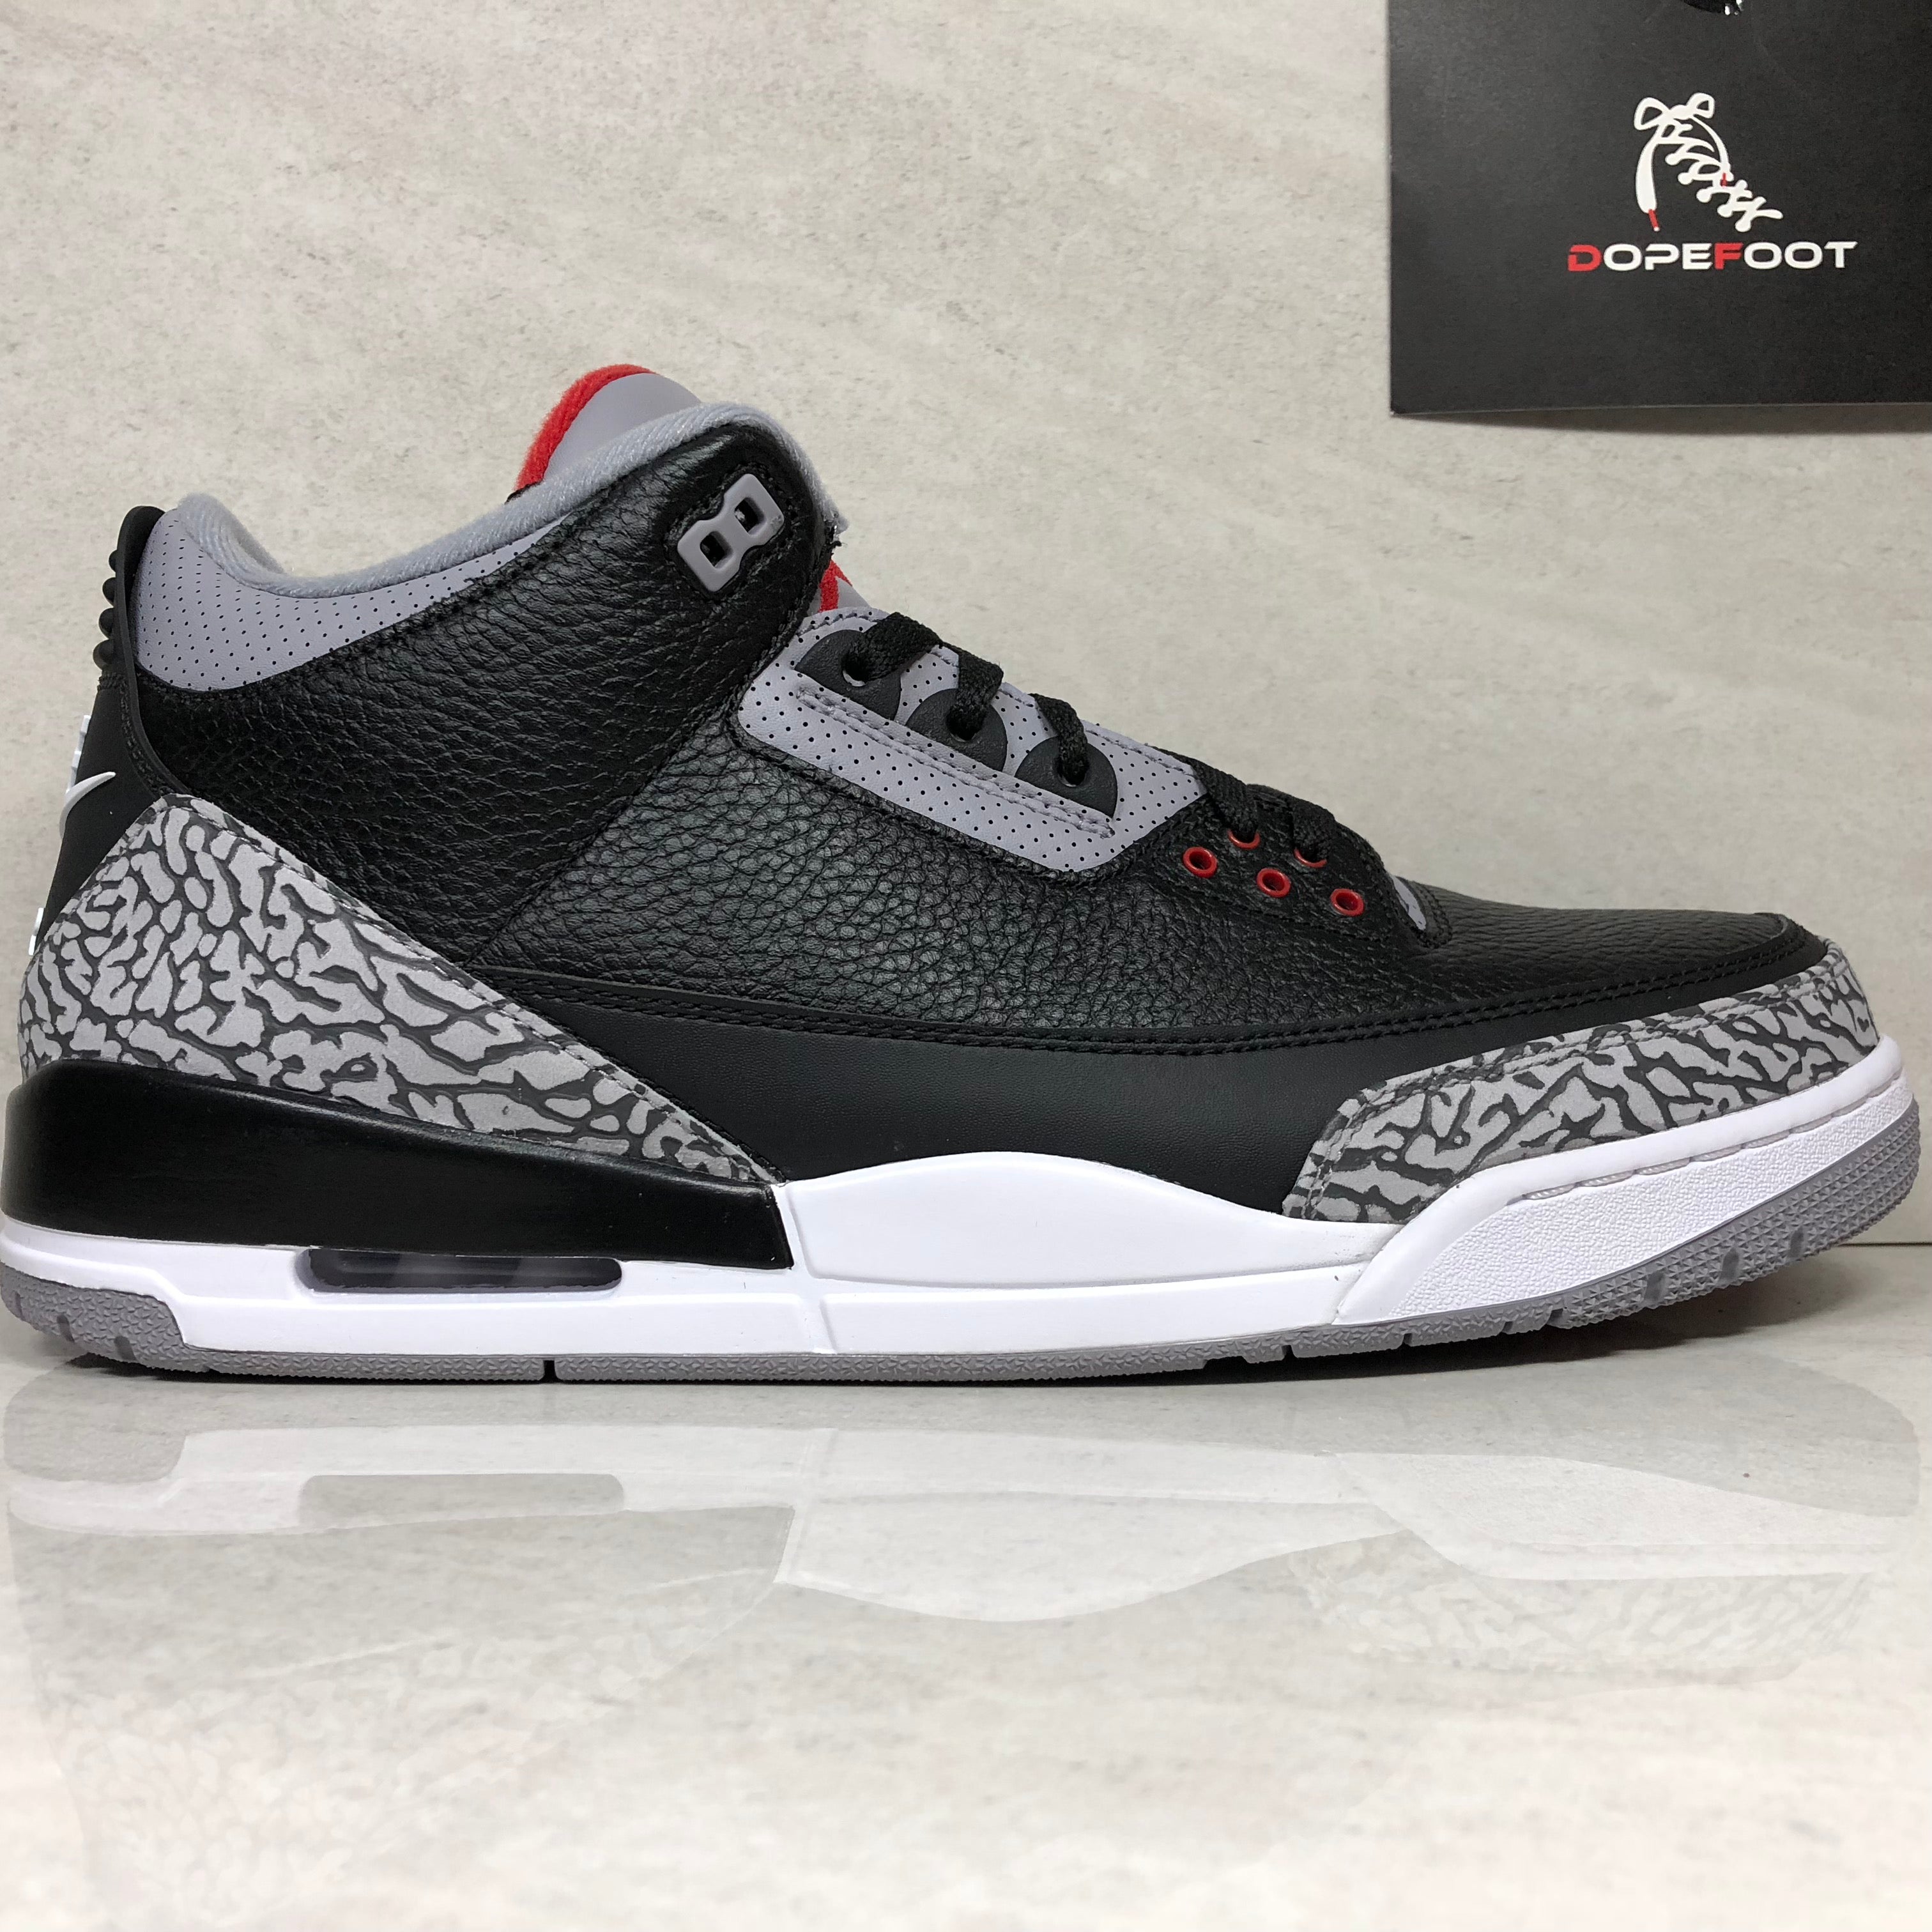 Nike Air Jordan 3 OG Retro Black Cement 